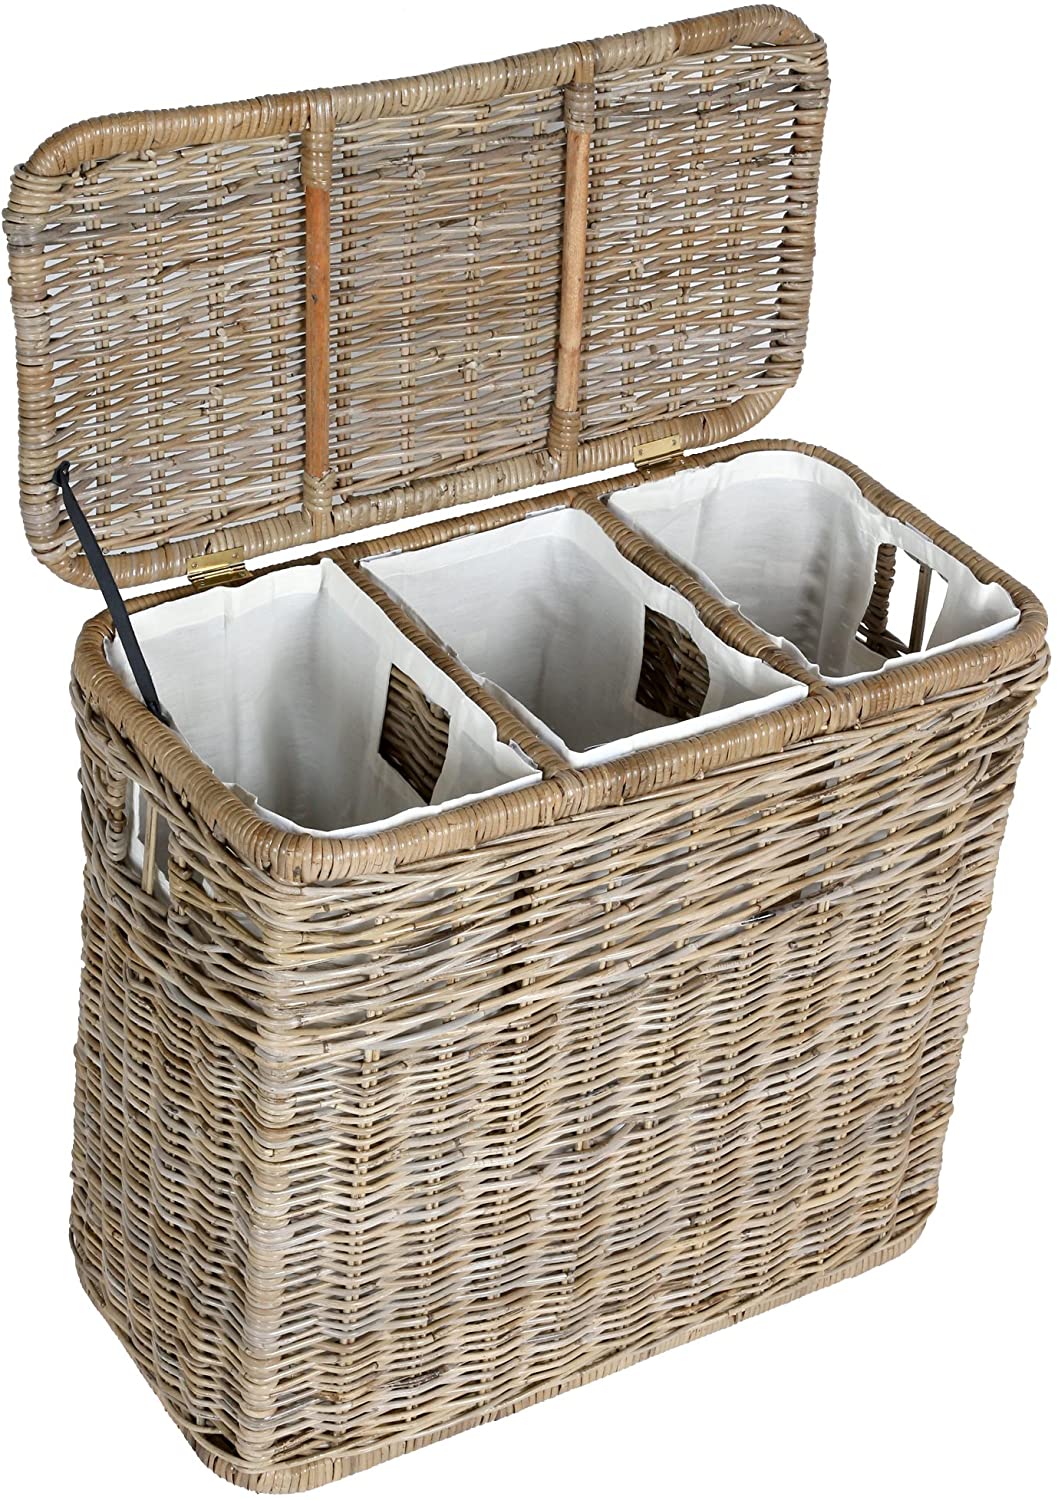 Wicker laundry baskets 